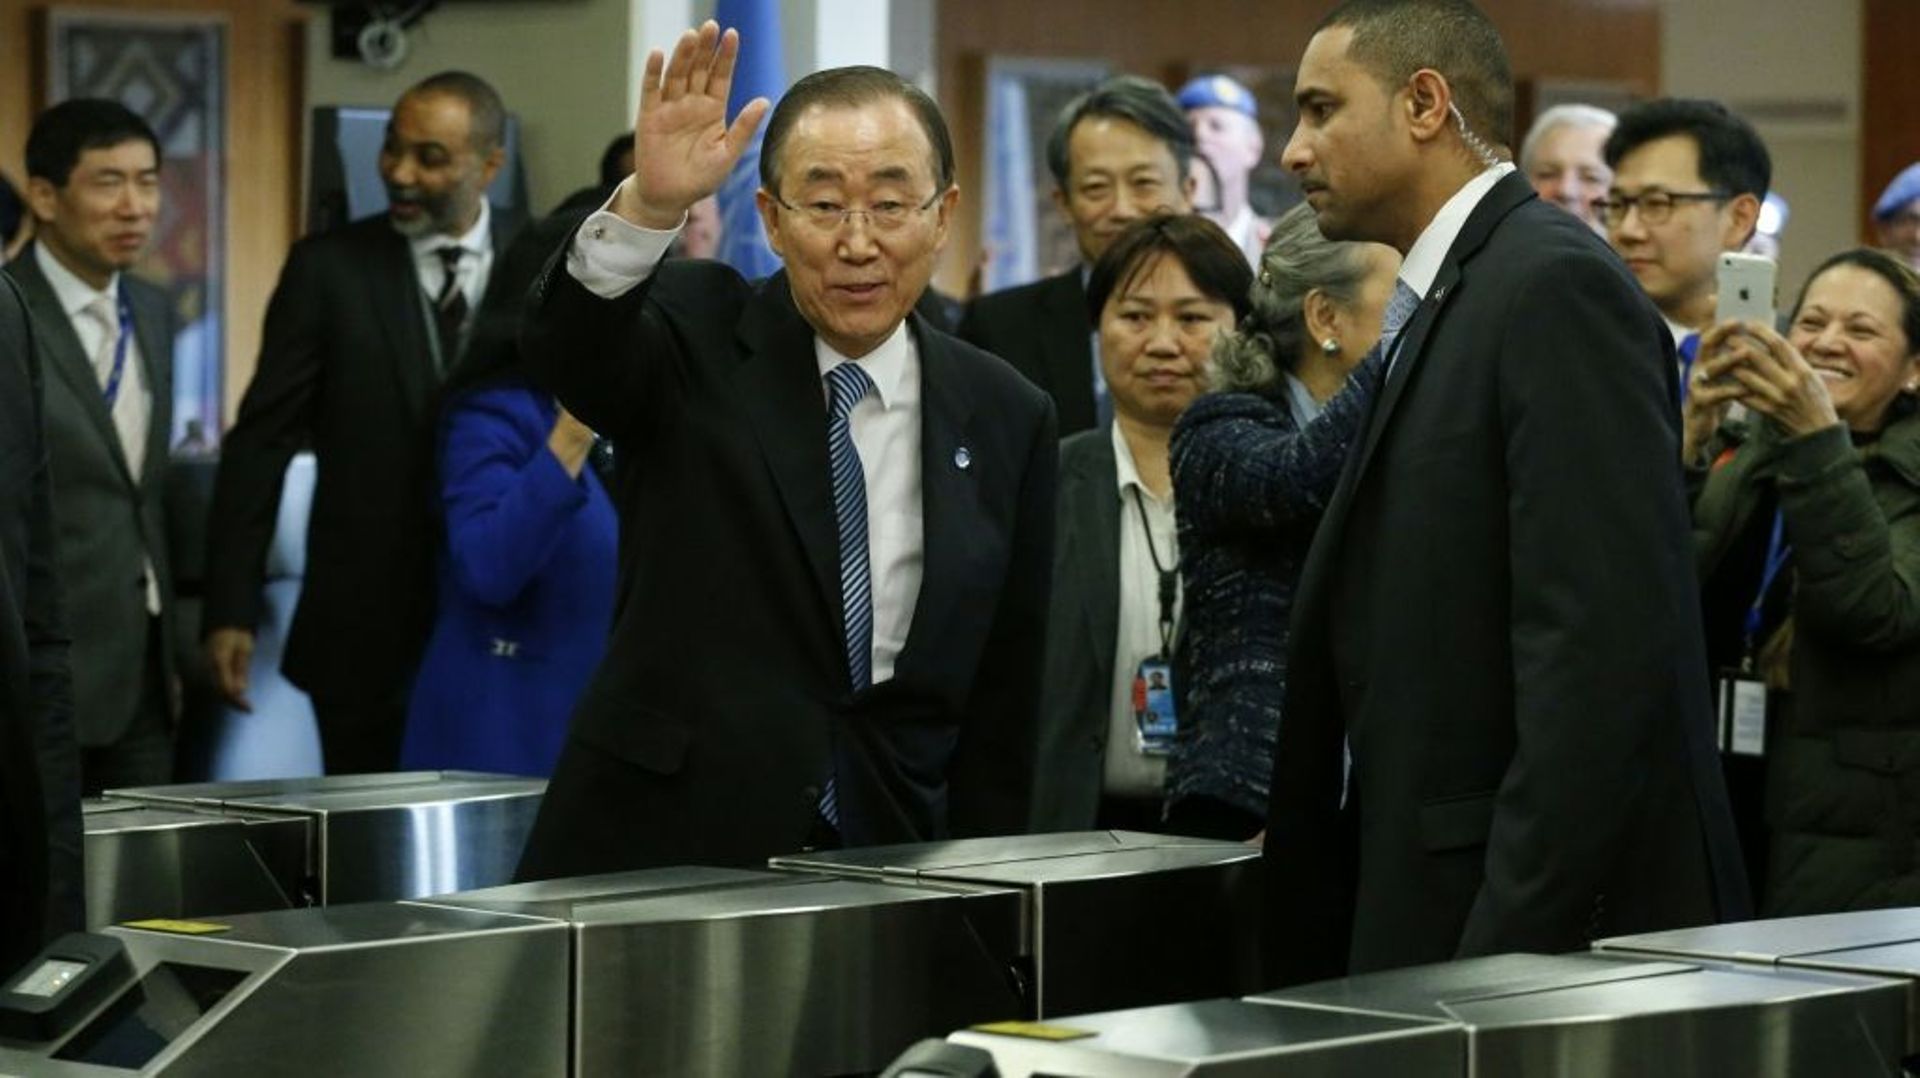 Le secrétaire général Ban Ki-moon fait ses adieux au personnel de l'ONU, à New York le 30 décembre 2016